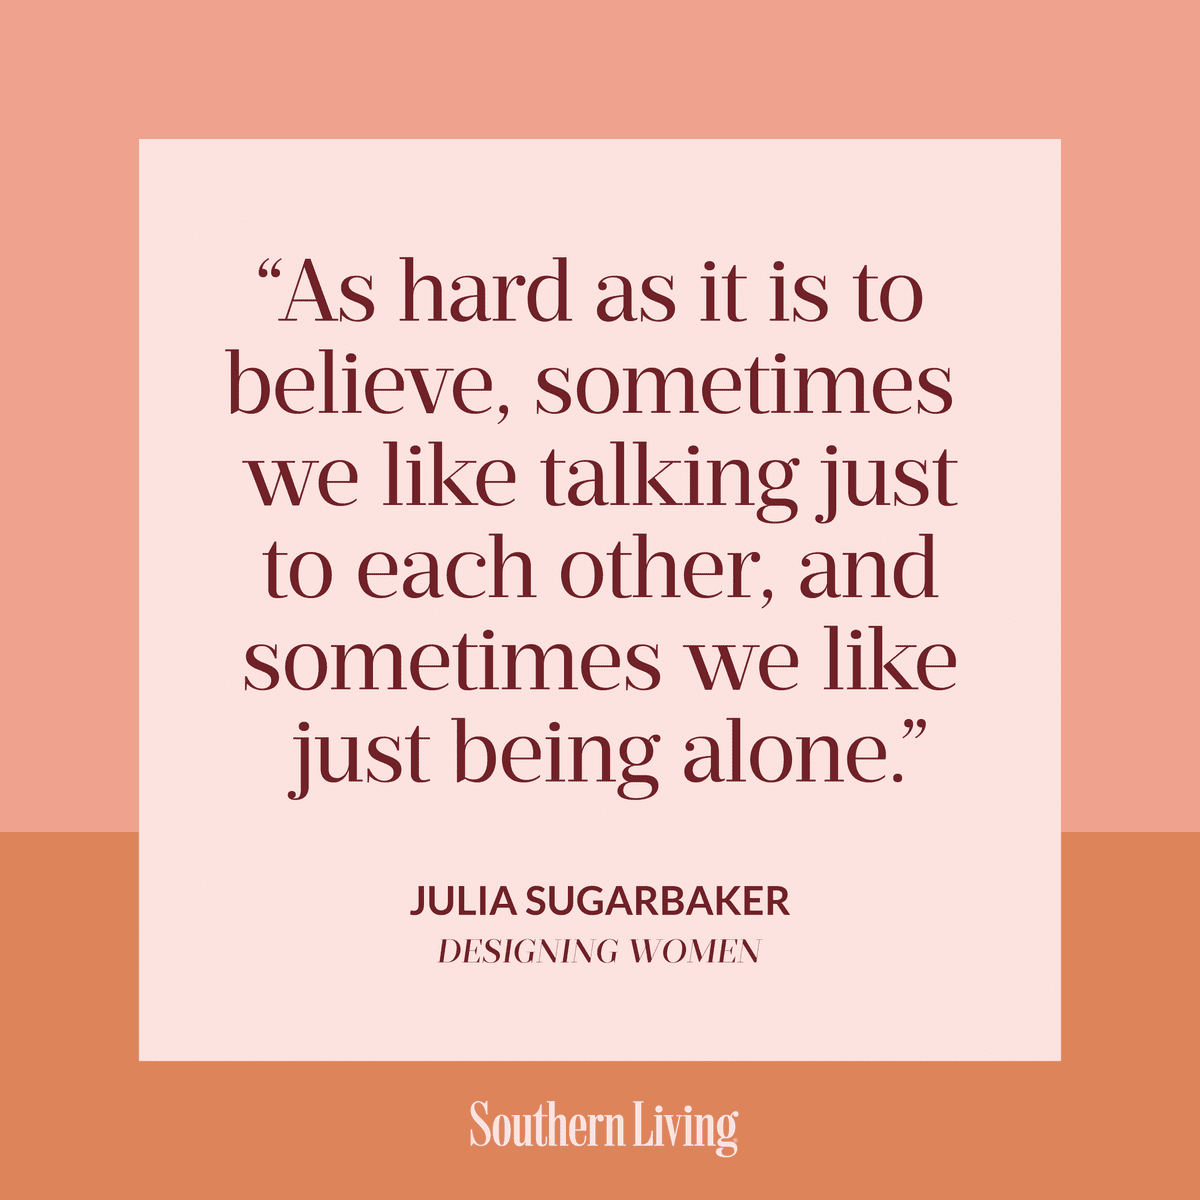 julia sugarbaker quote